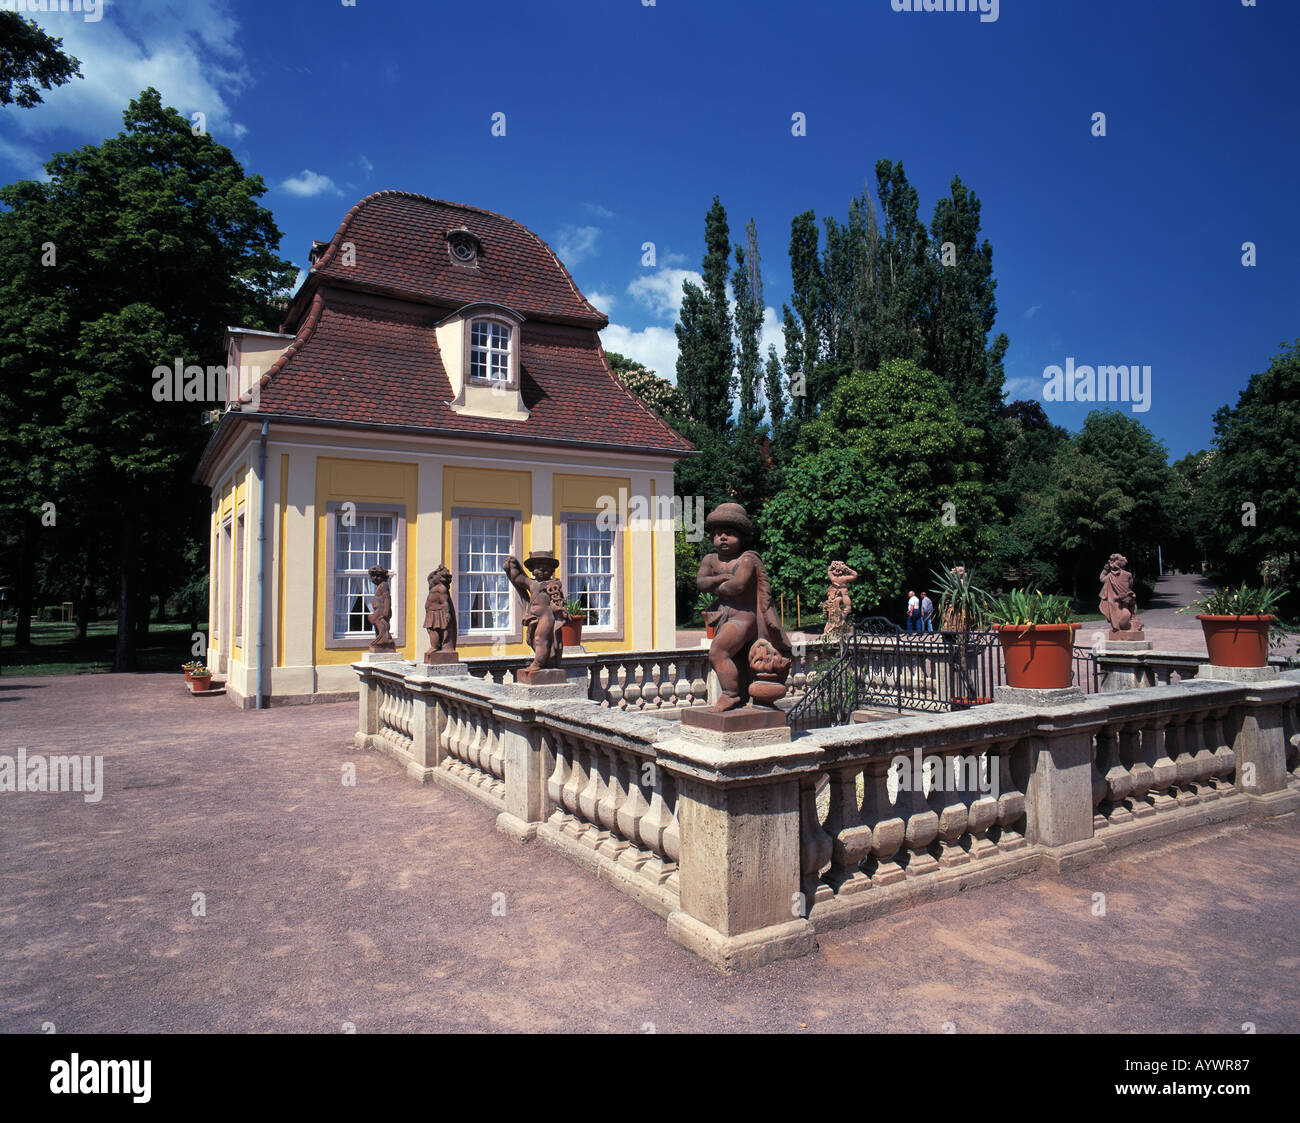 Kurpark mit Lauchstaedter Heilbrunnen, Brunnenfiguren, Putten, Bad Lauchstaedt, Laucha, Sachsen-Anhalt Stock Photo